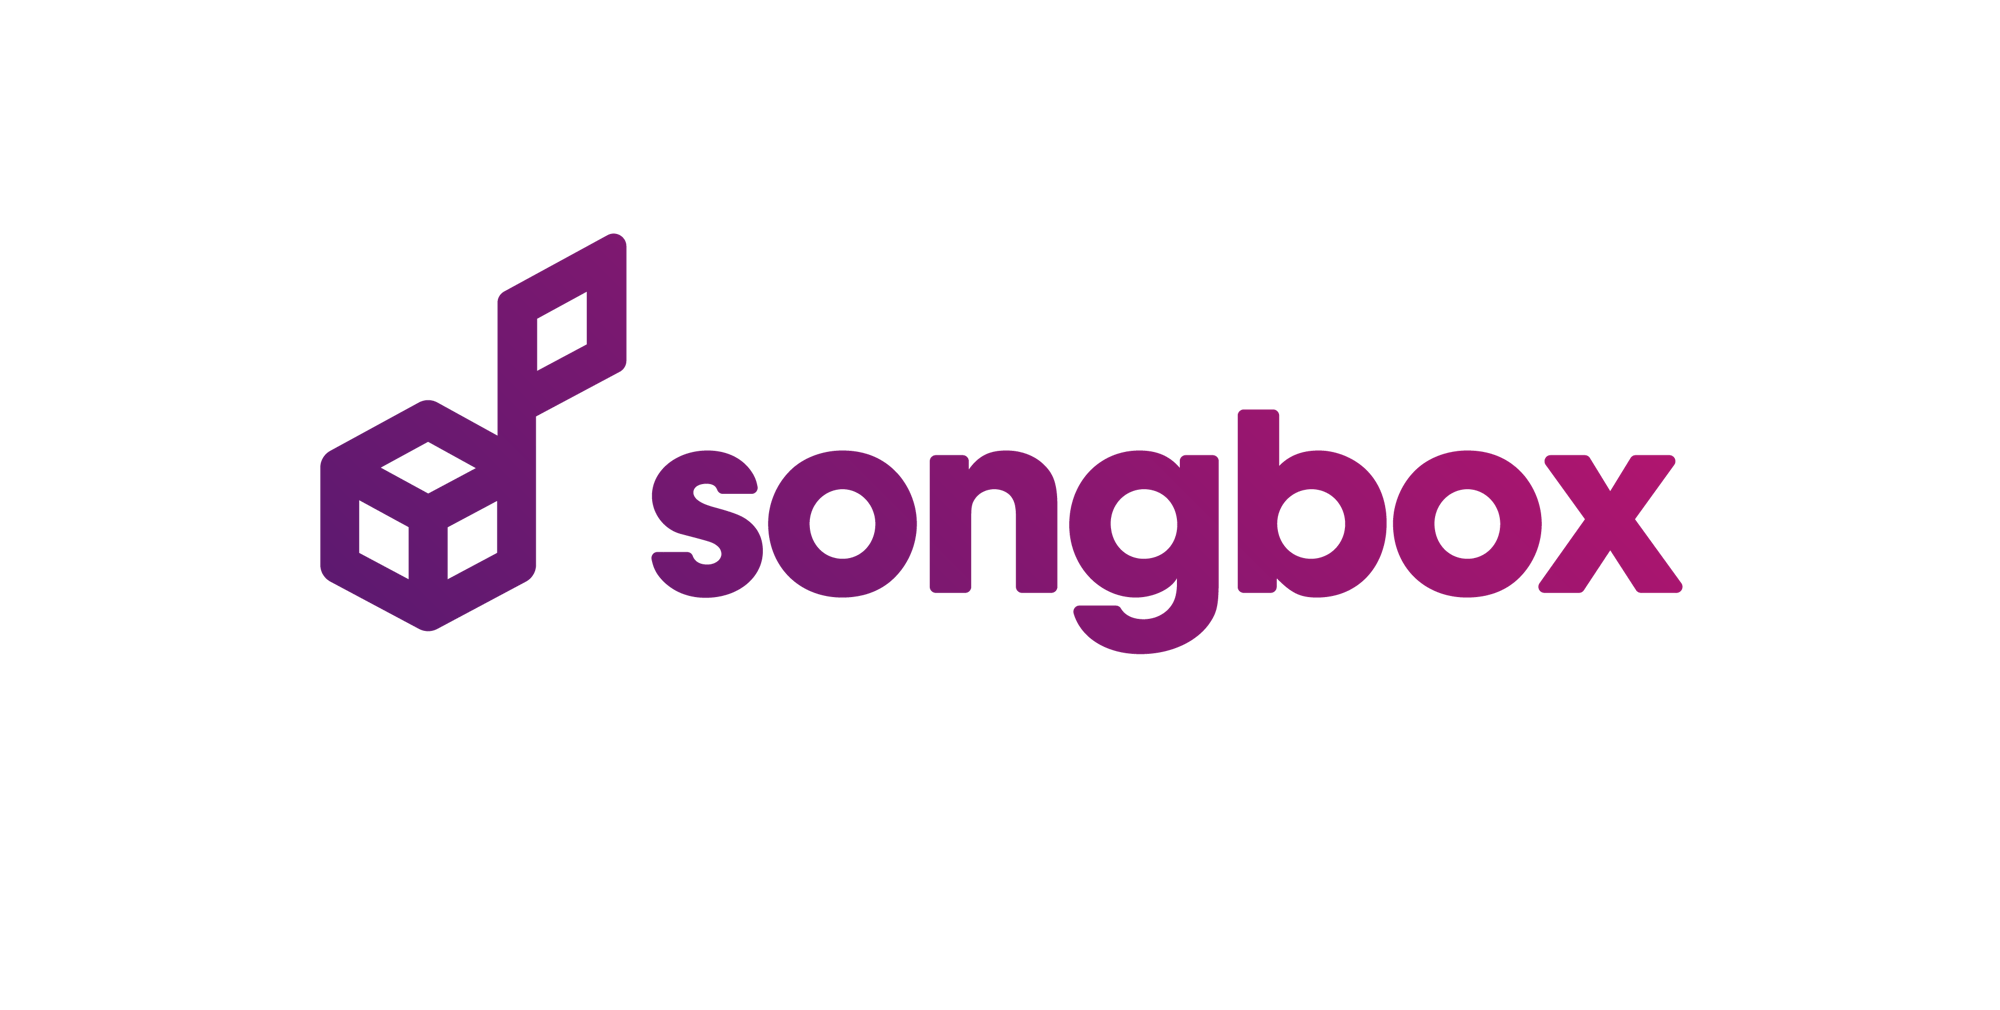 Songbox-logo-suite-10